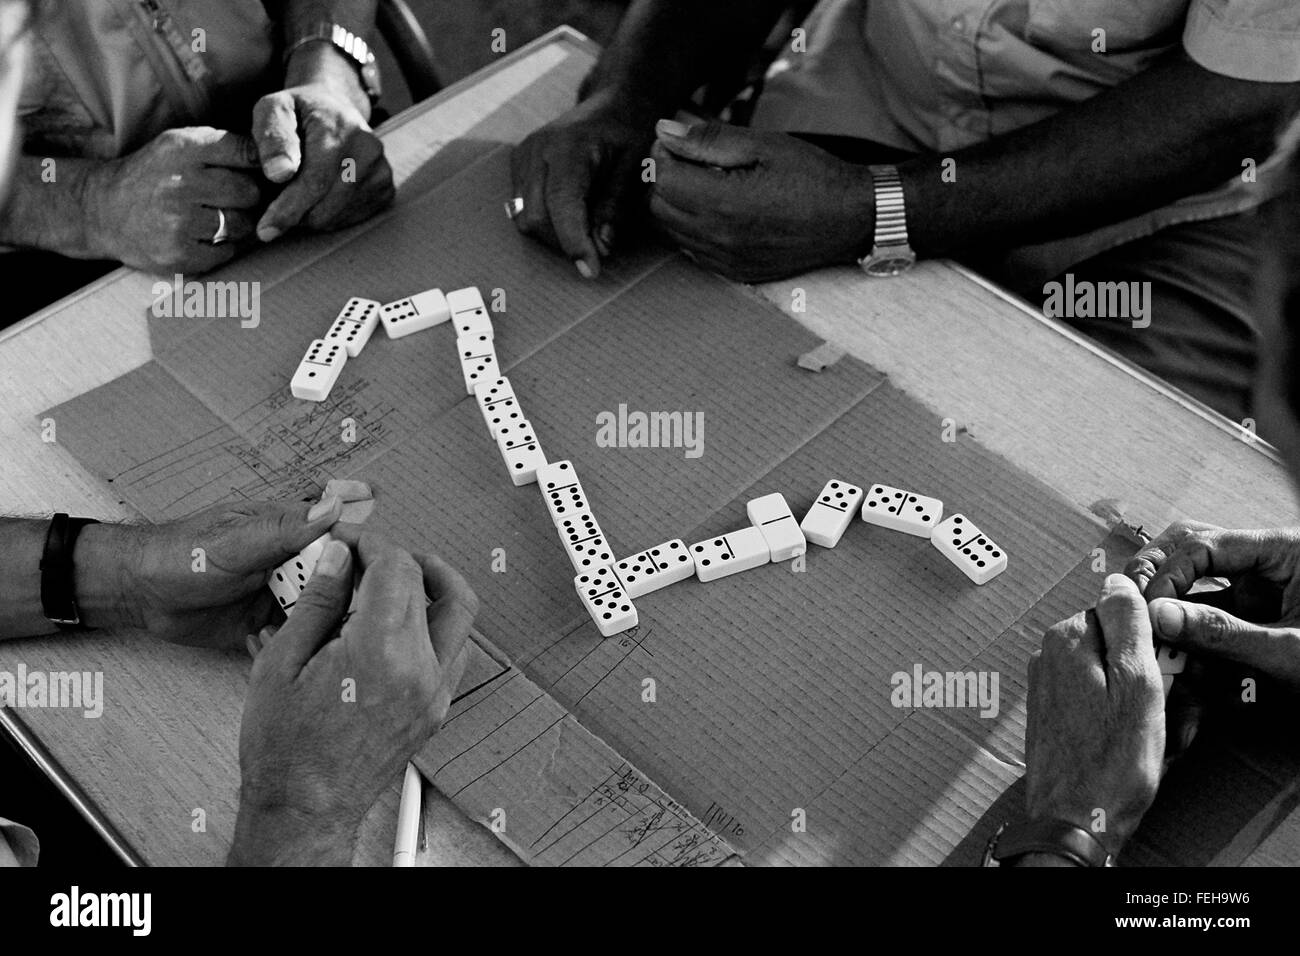 AJAXNETPHOTO. CANNES, Francia. - GAME OVER - Un gioco di domino IN CORSO IN UN PARCO vicino alla Croisette. Foto:JONATHAN EASTLAND/AJAX REF:CD74 31709 12 Foto Stock